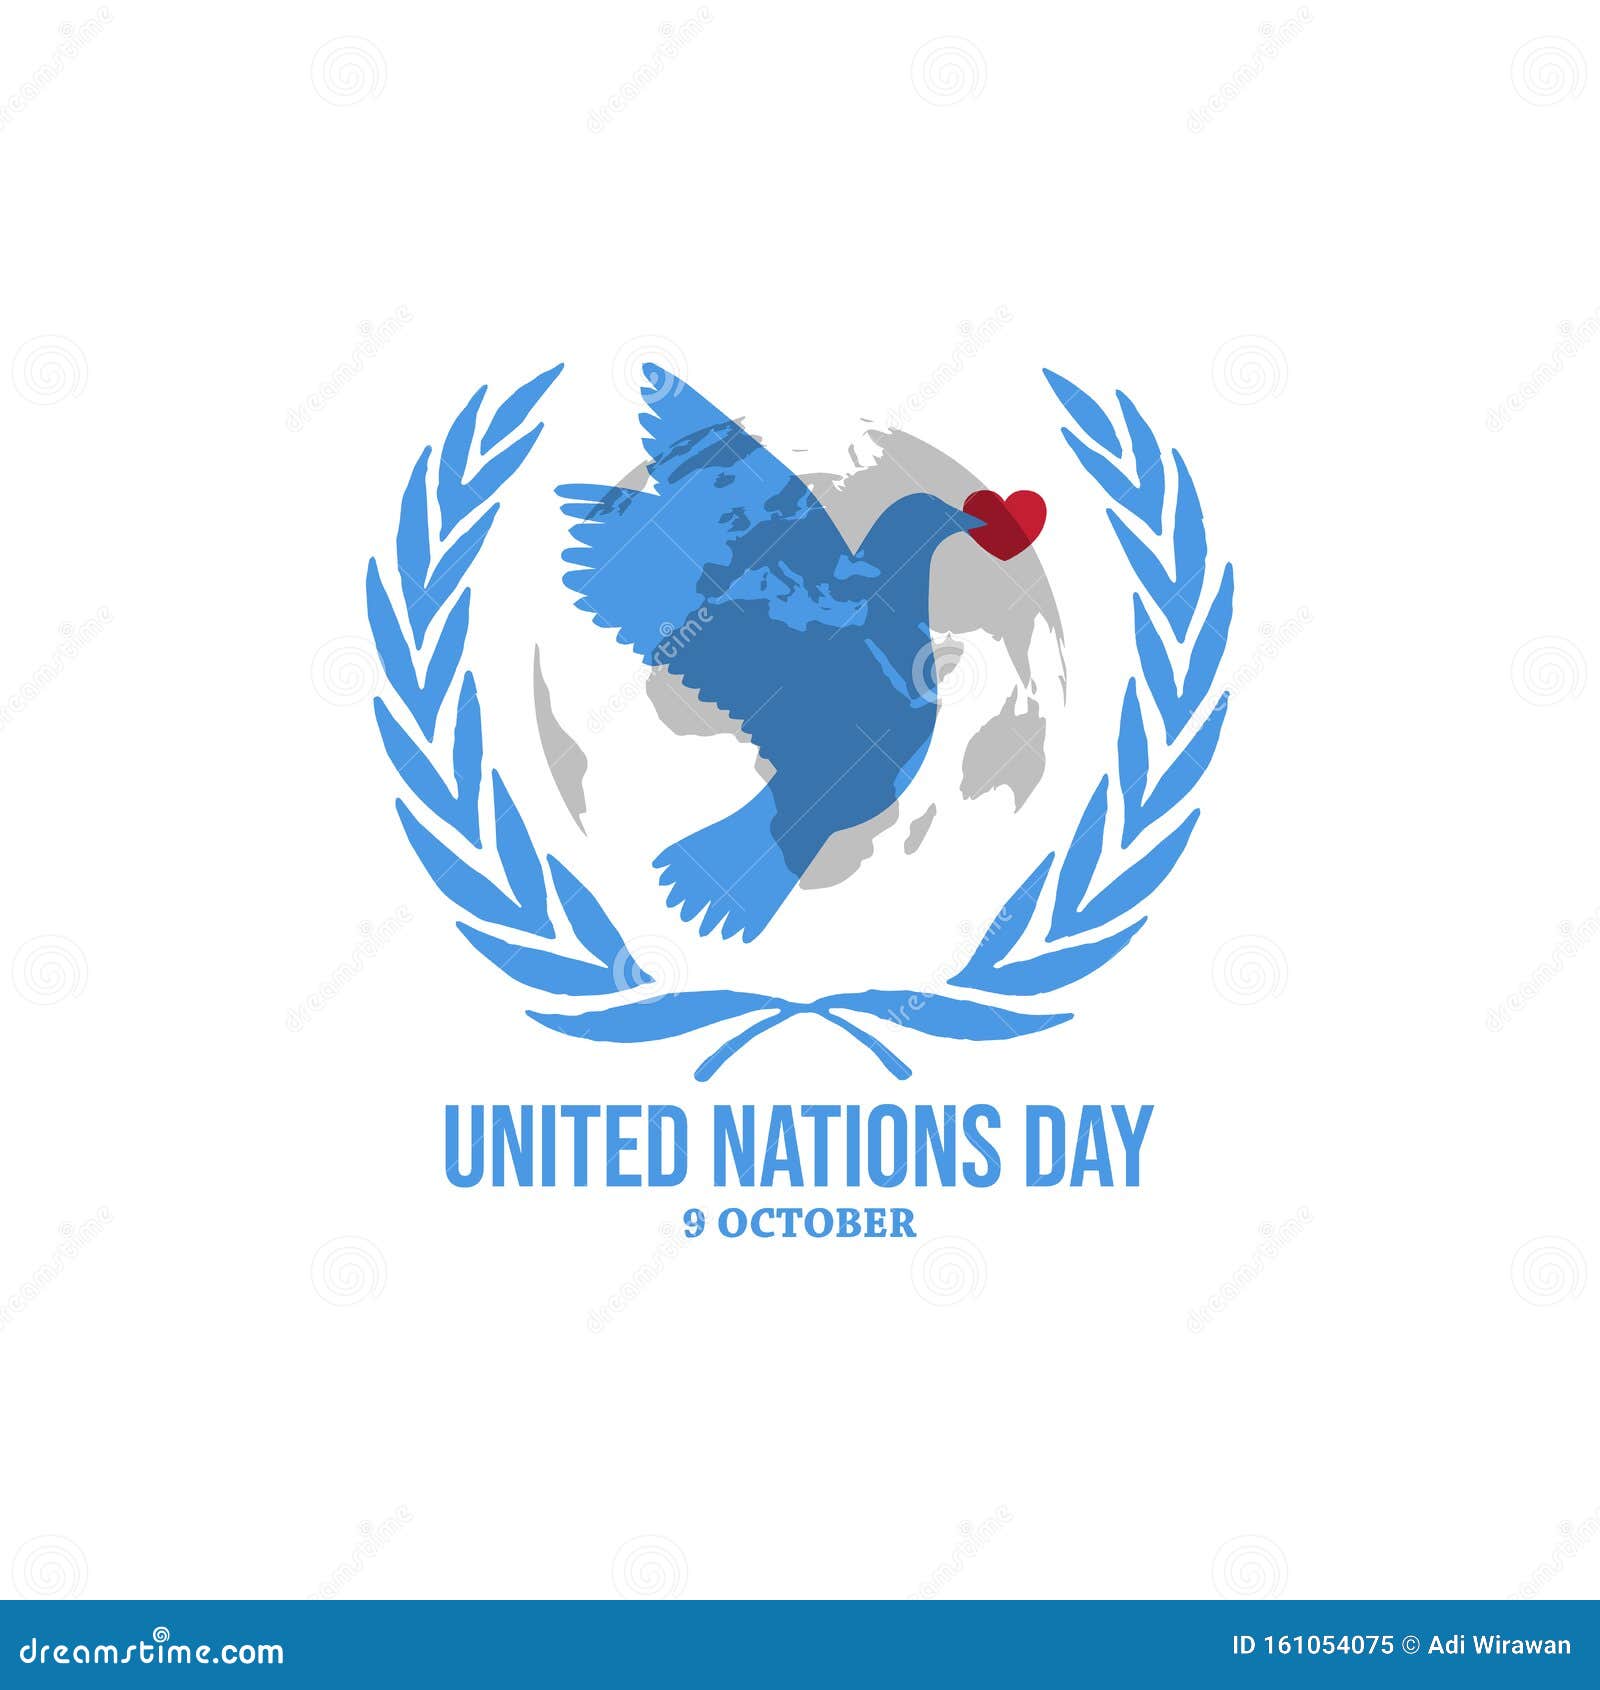 Ngày Liên Hiệp Quốc minh họa - Hình ảnh đầy màu sắc trong ngày đặc biệt này đã được tạo ra để gợi lên niềm vui và lạc quan của chúng ta về một thế giới hòa bình. Hãy xem và cảm nhận tinh thần đoàn kết của chúng ta thông qua các bức tranh minh họa đặc biệt này.